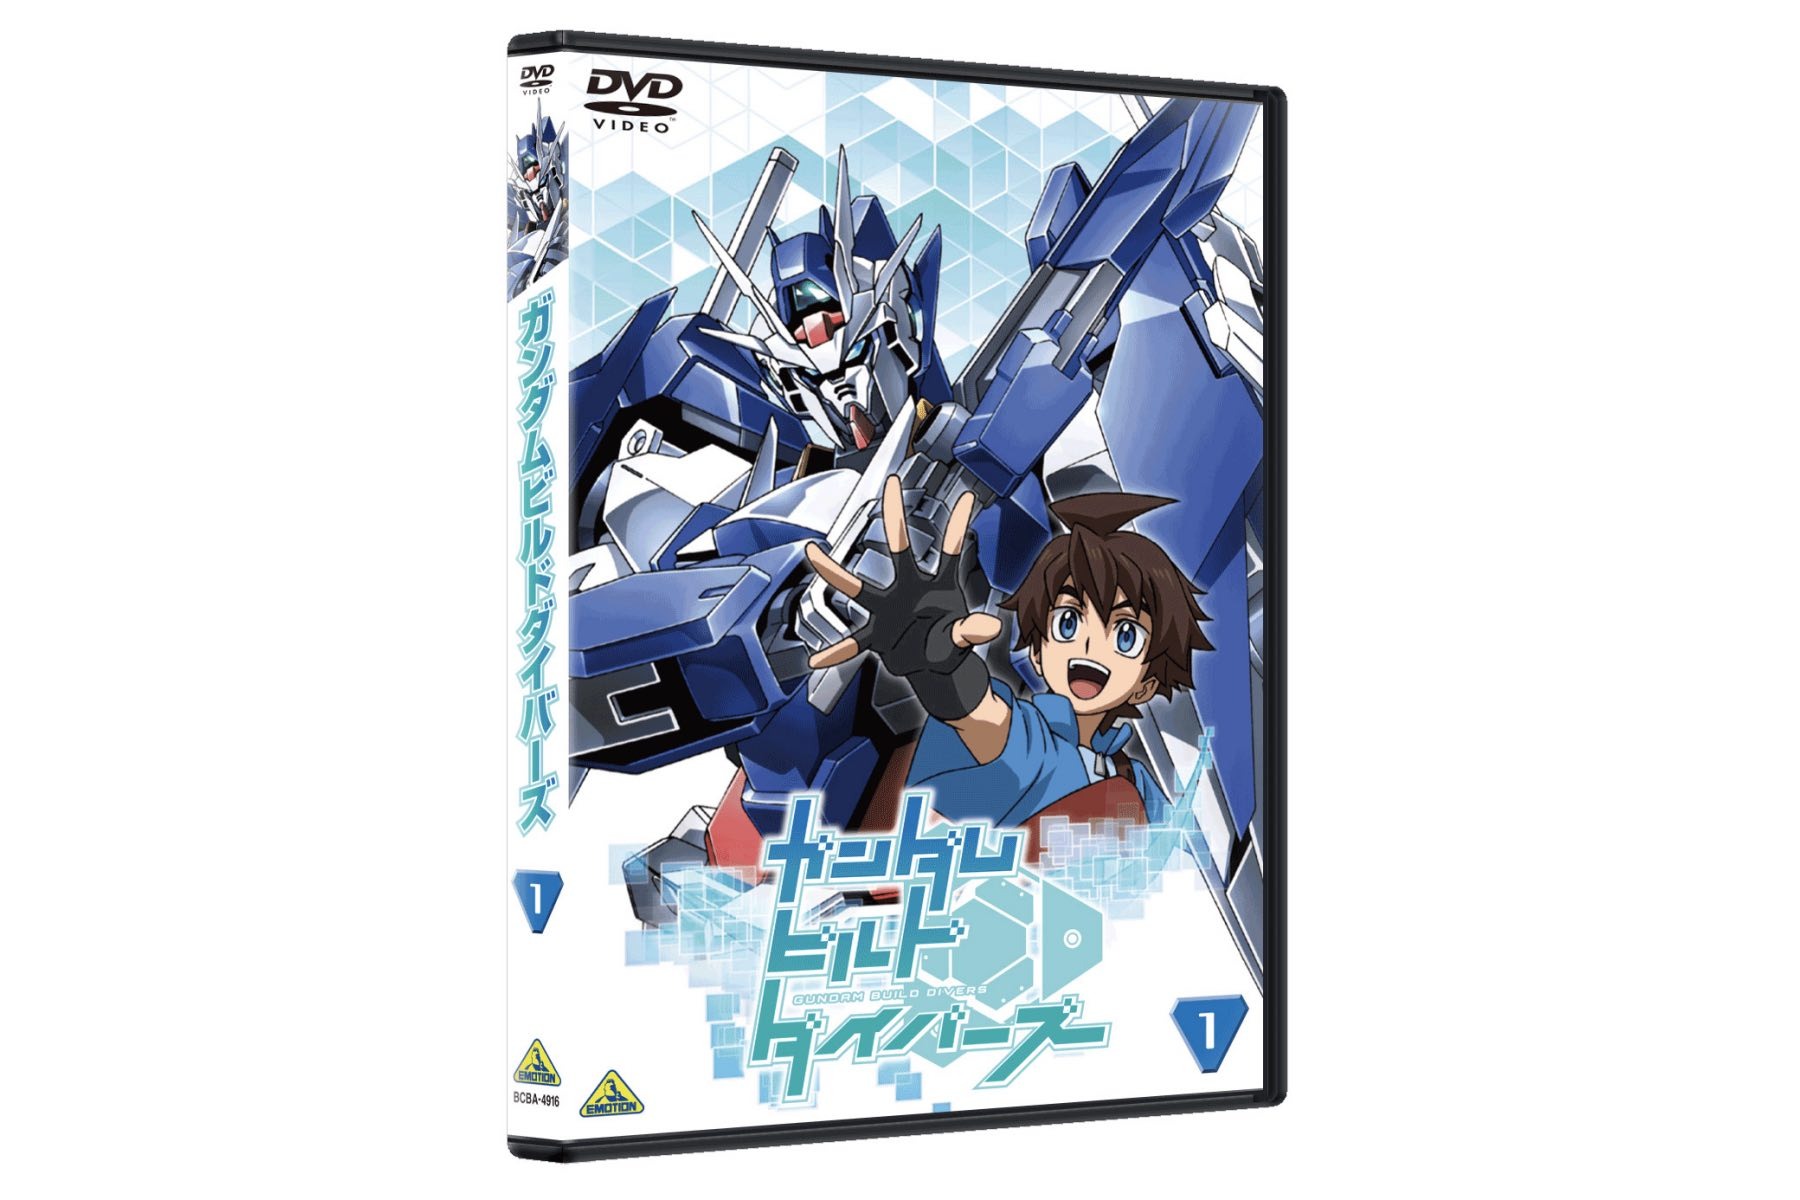 TVアニメ『ガンダムビルドダイバーズ』Blu-ray BOX 1ジャケット